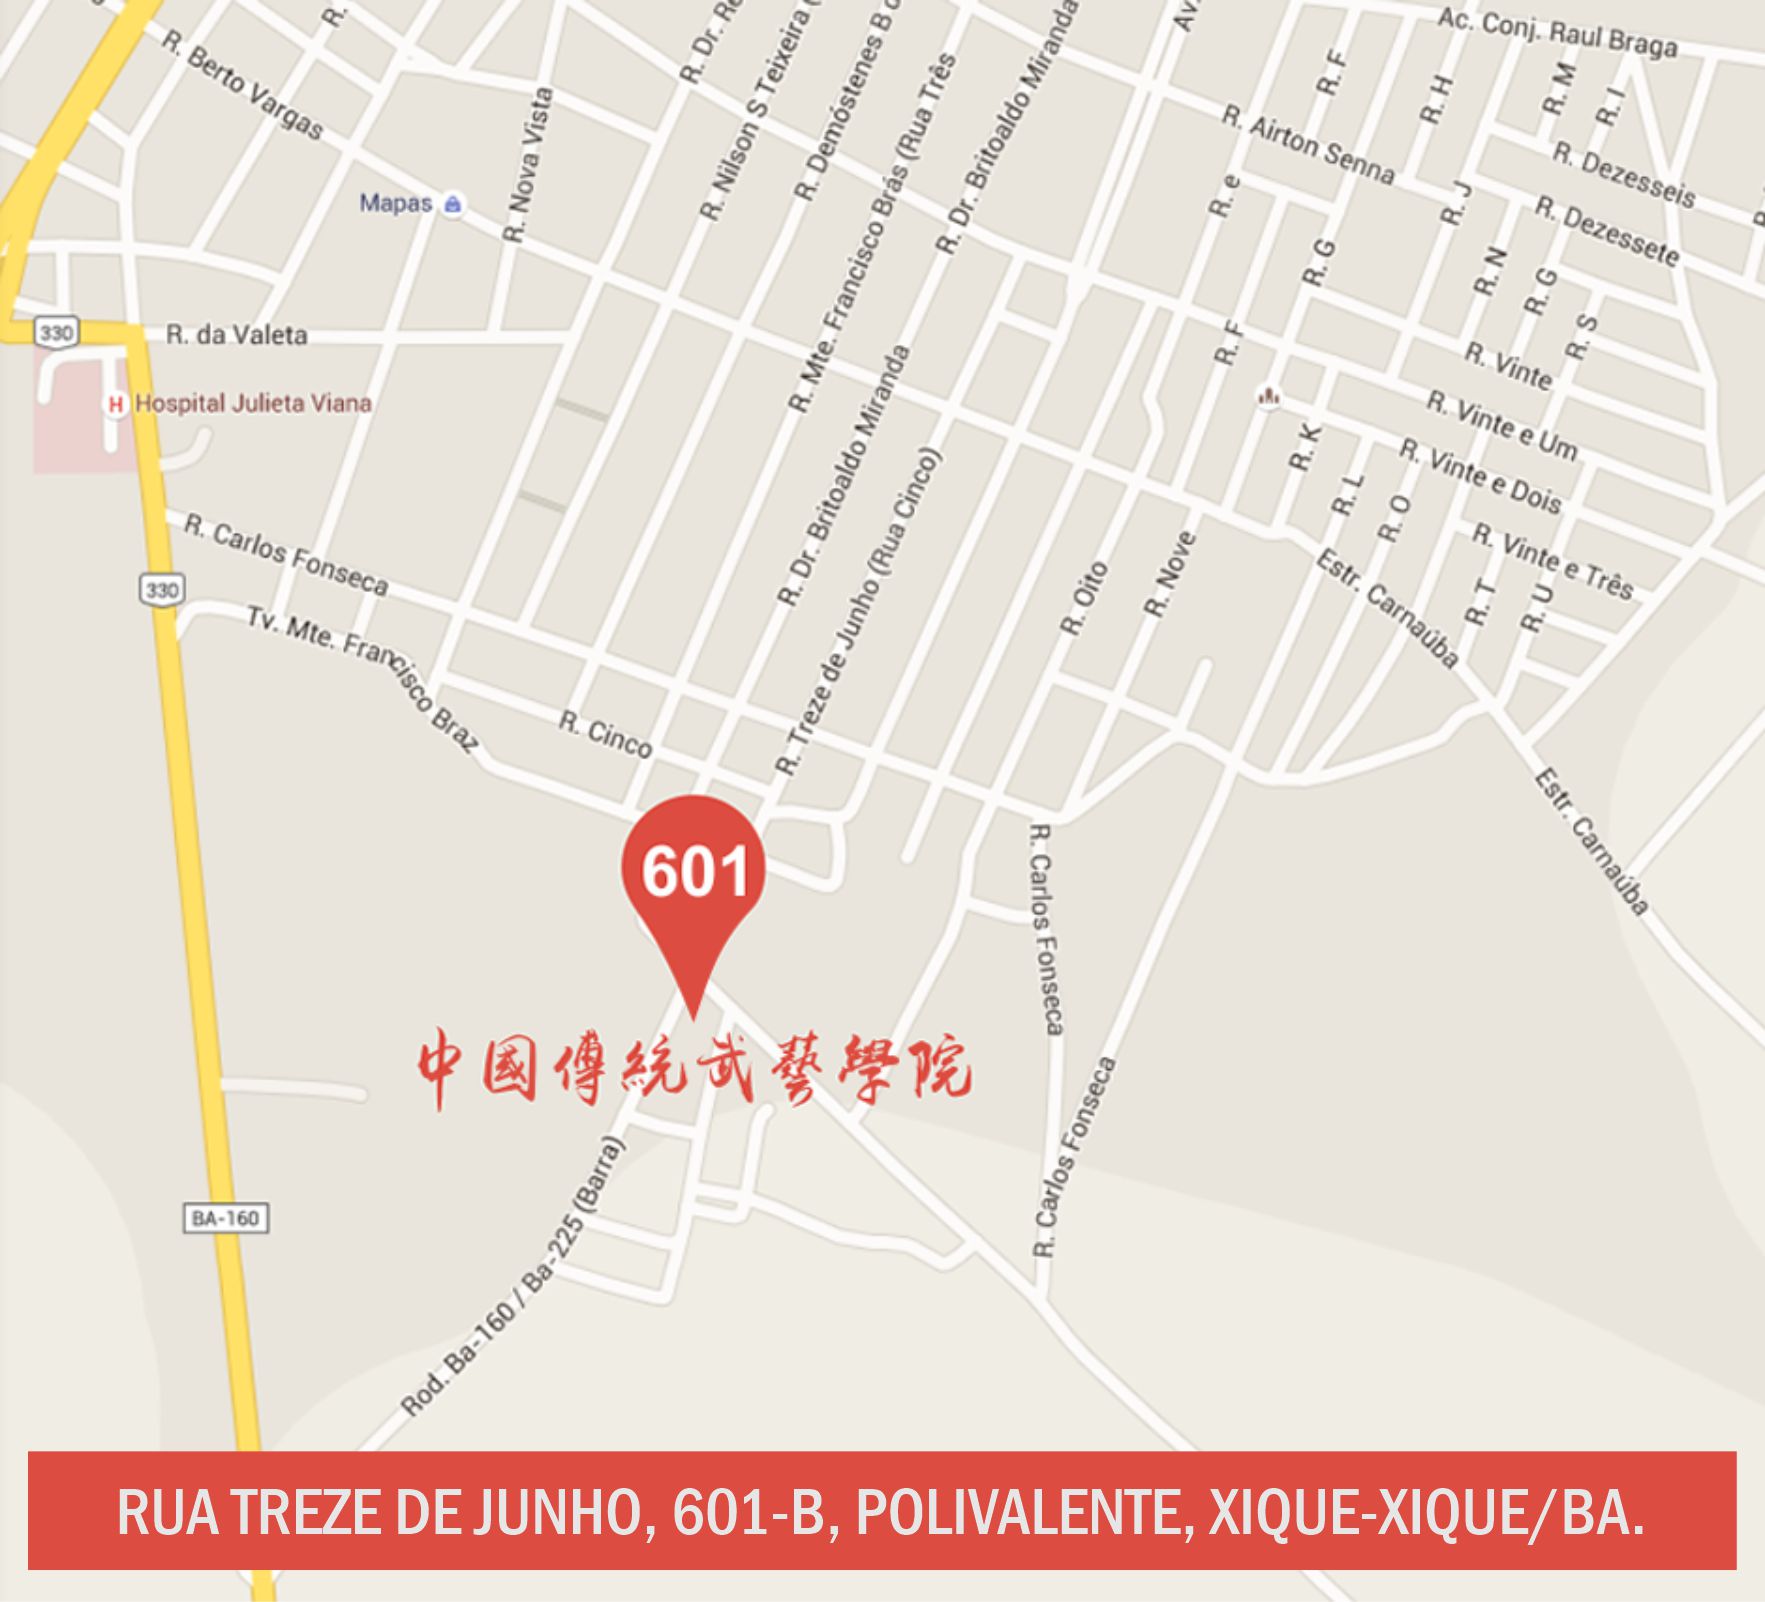 Rua Treze de Junho, 601-A, Polivalente, Xique-Xique (BA)